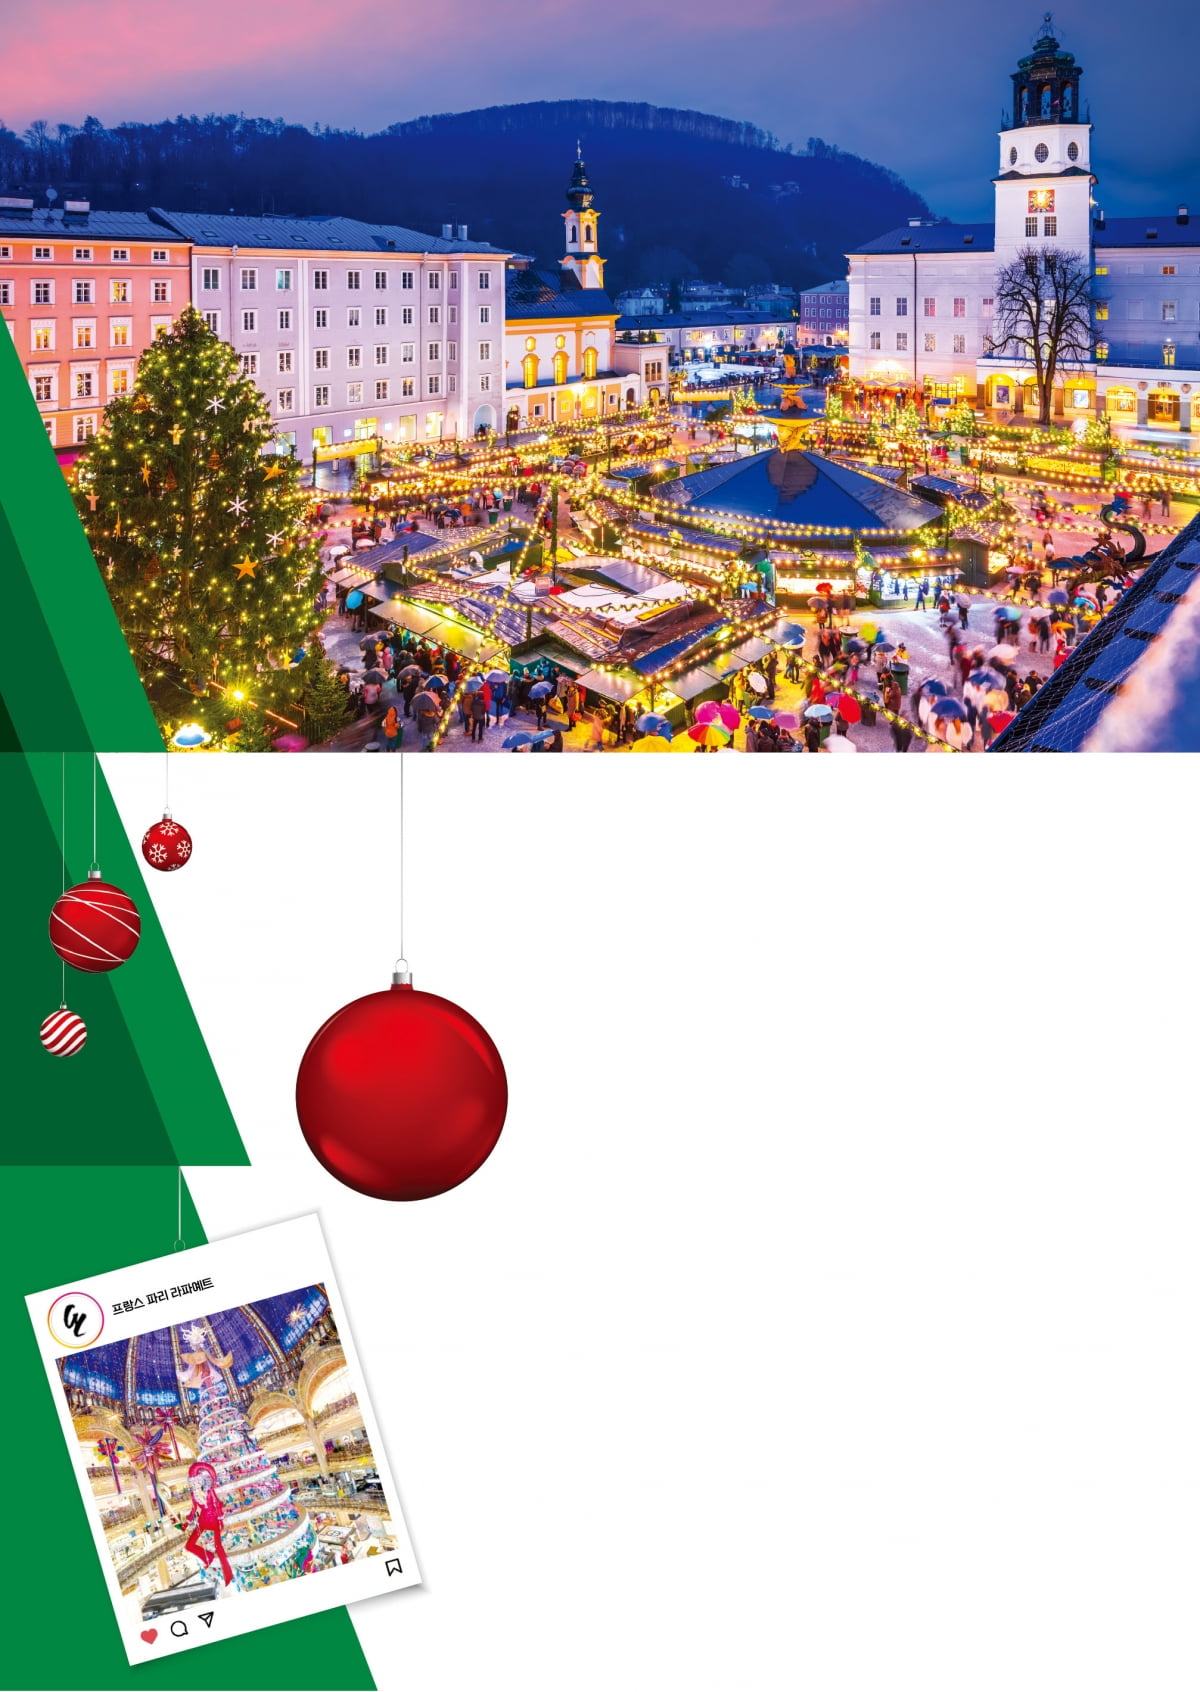 오스트리아 잘츠부르크 대성당 광장의 크리스마스 마켓.   Gettyimages 